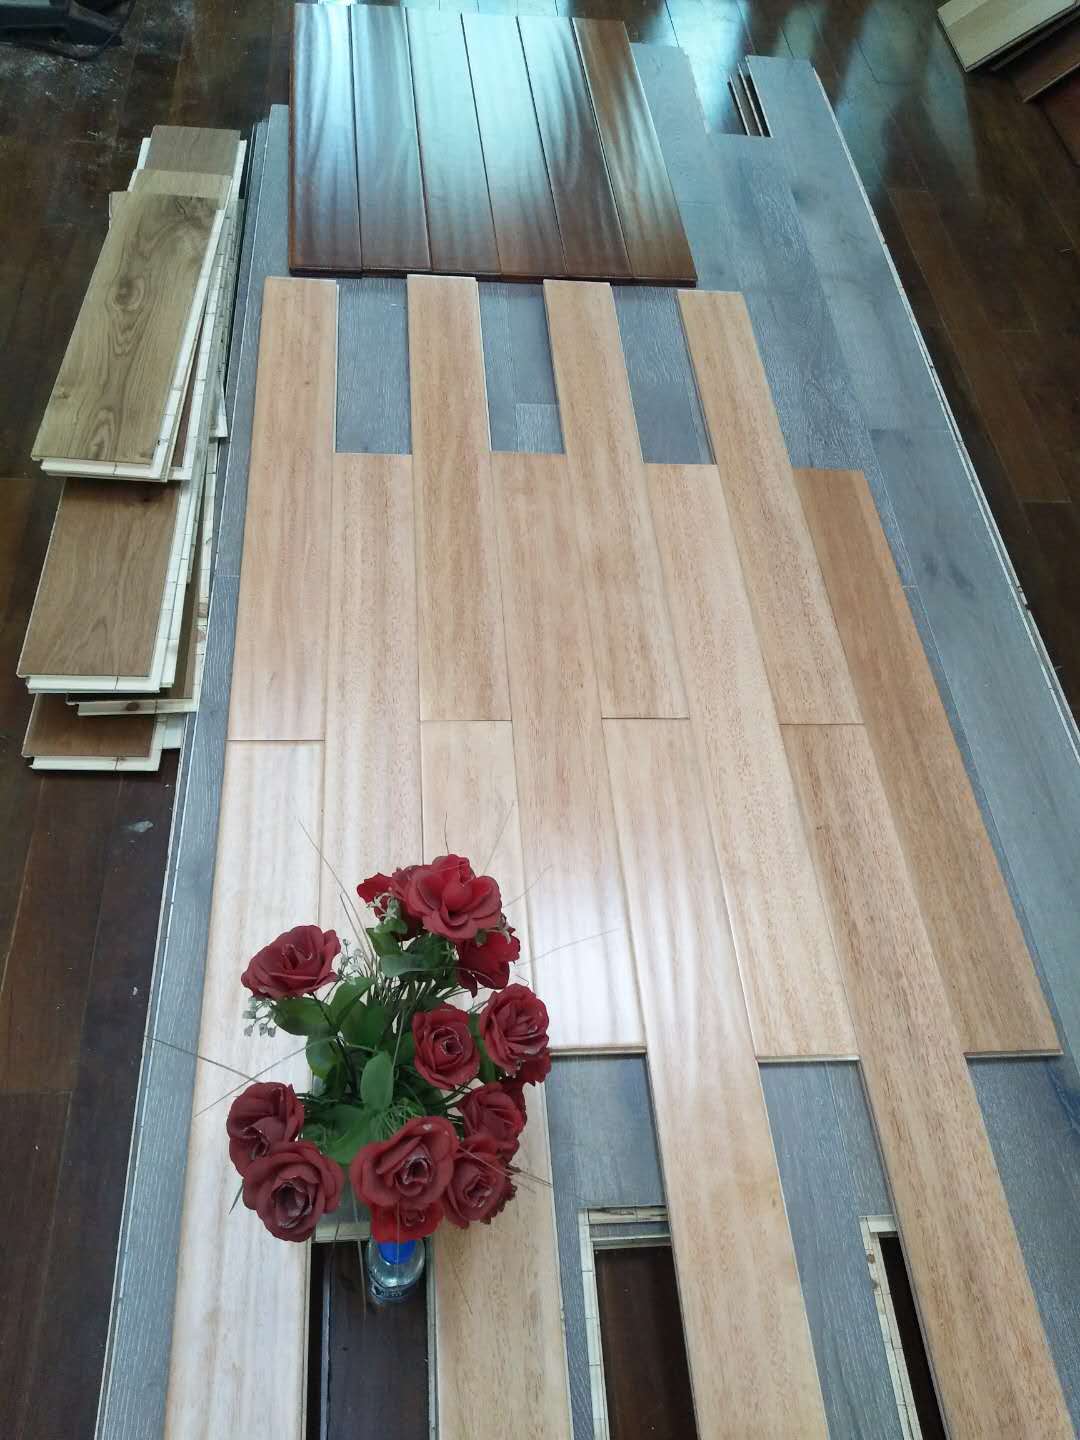 哪里的实木板好  多层木板批发价格  实地板批发  地板厂家 实木地板批发价格图片